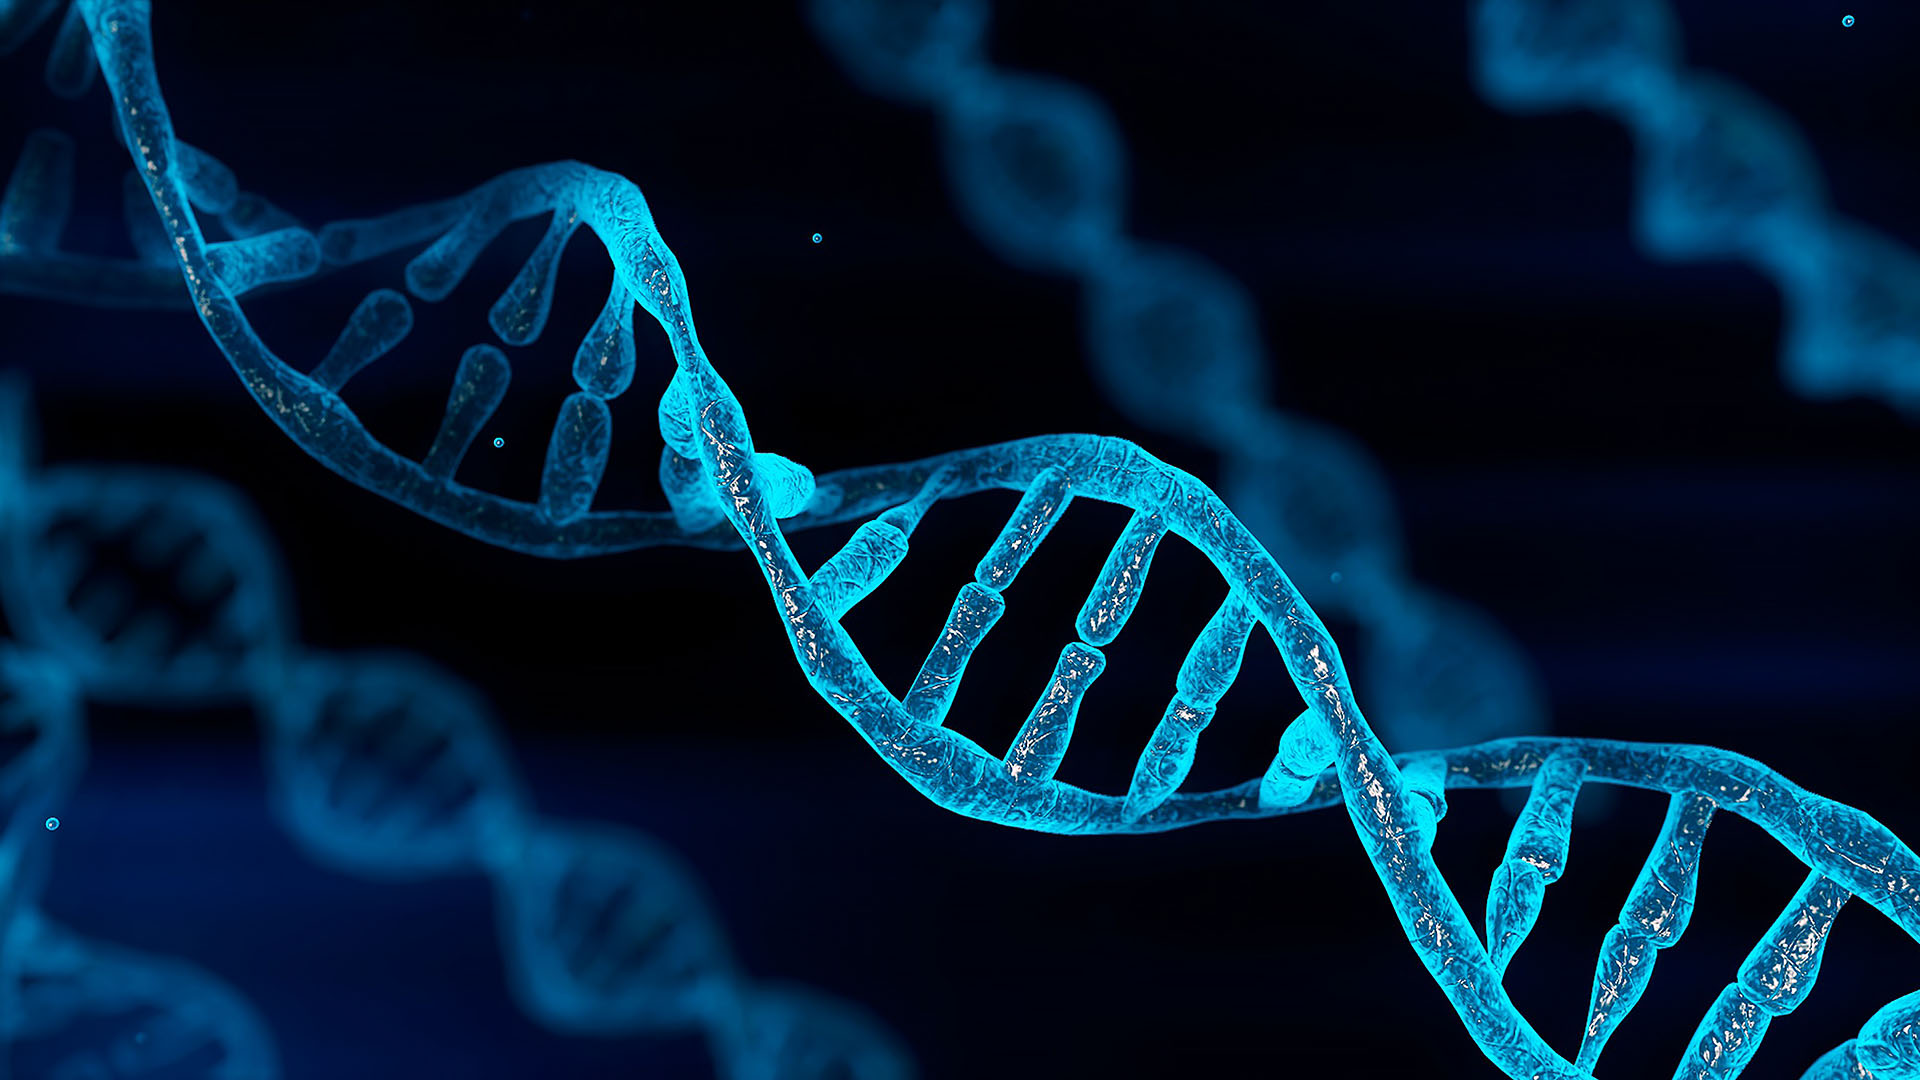 Ilustracja przedstawiająca niebieski chromosom DNA